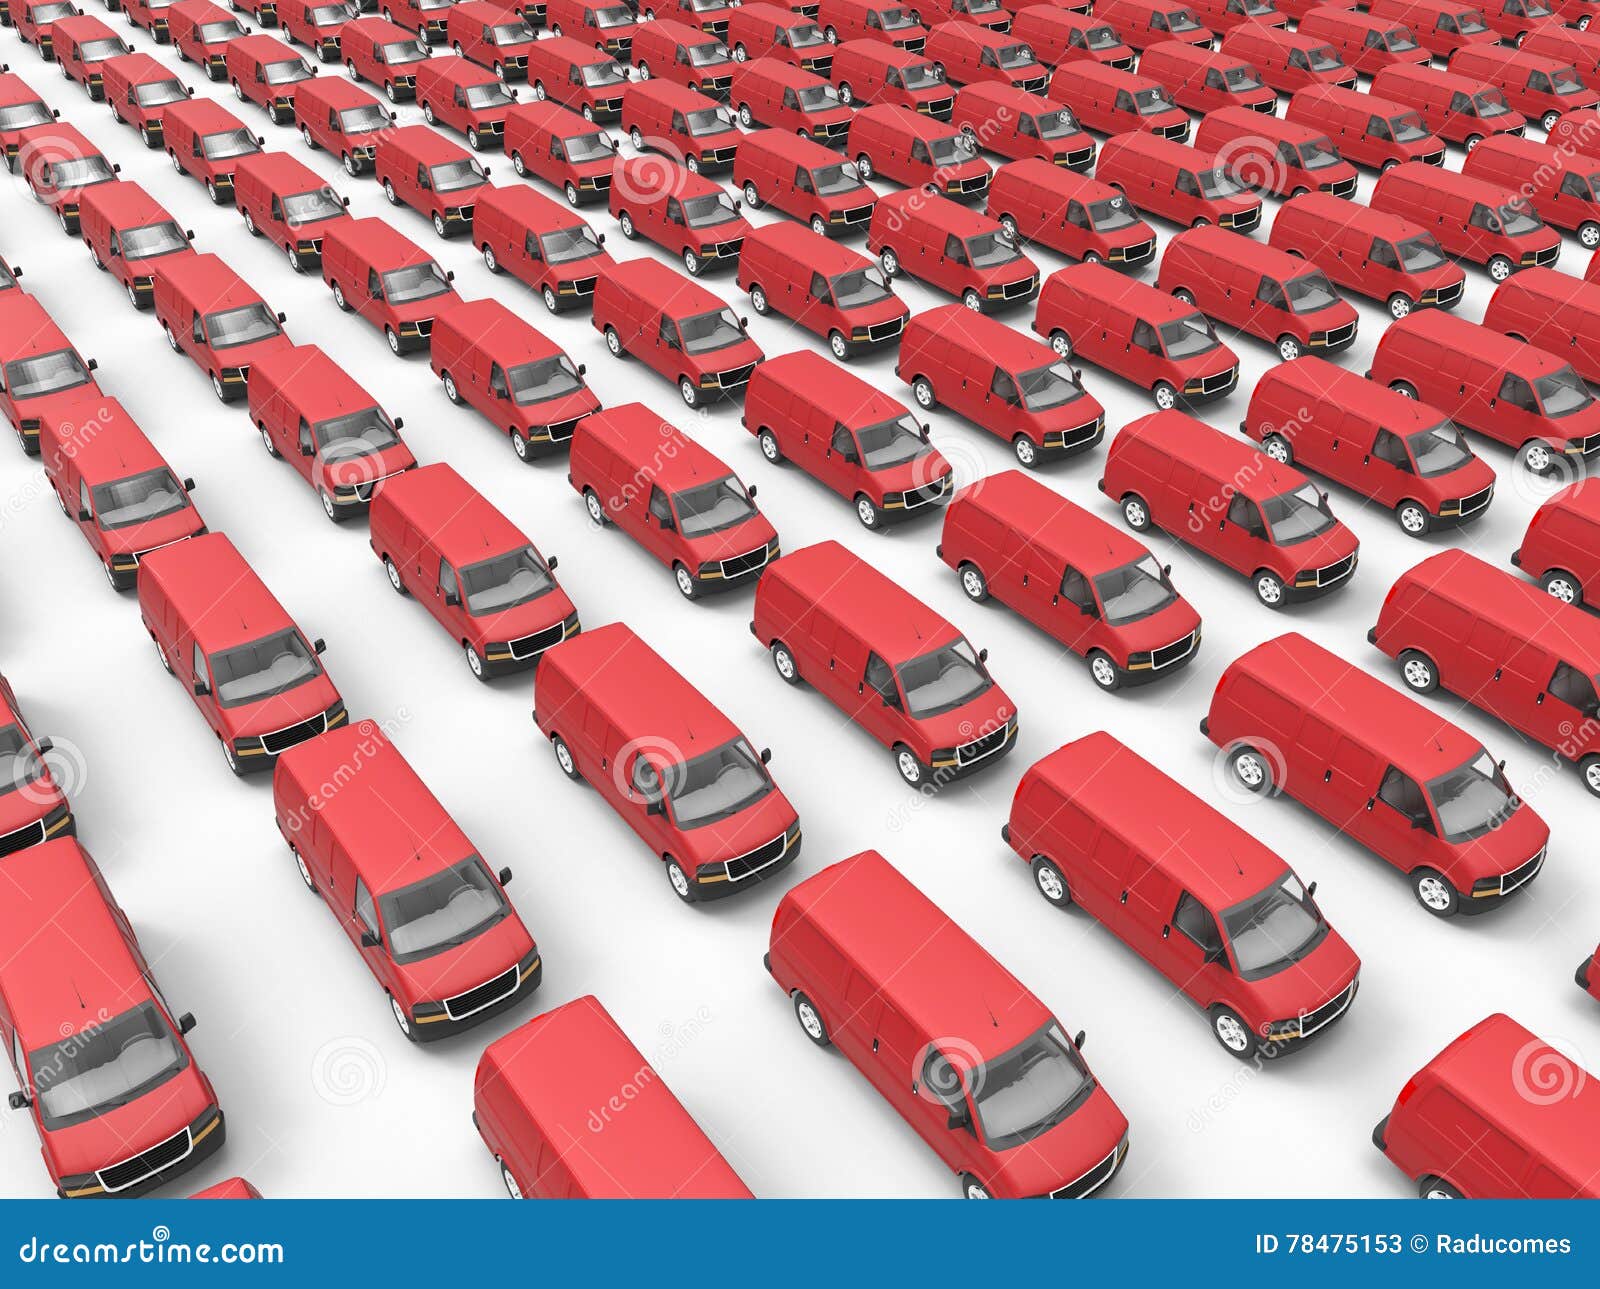 red vans transportation